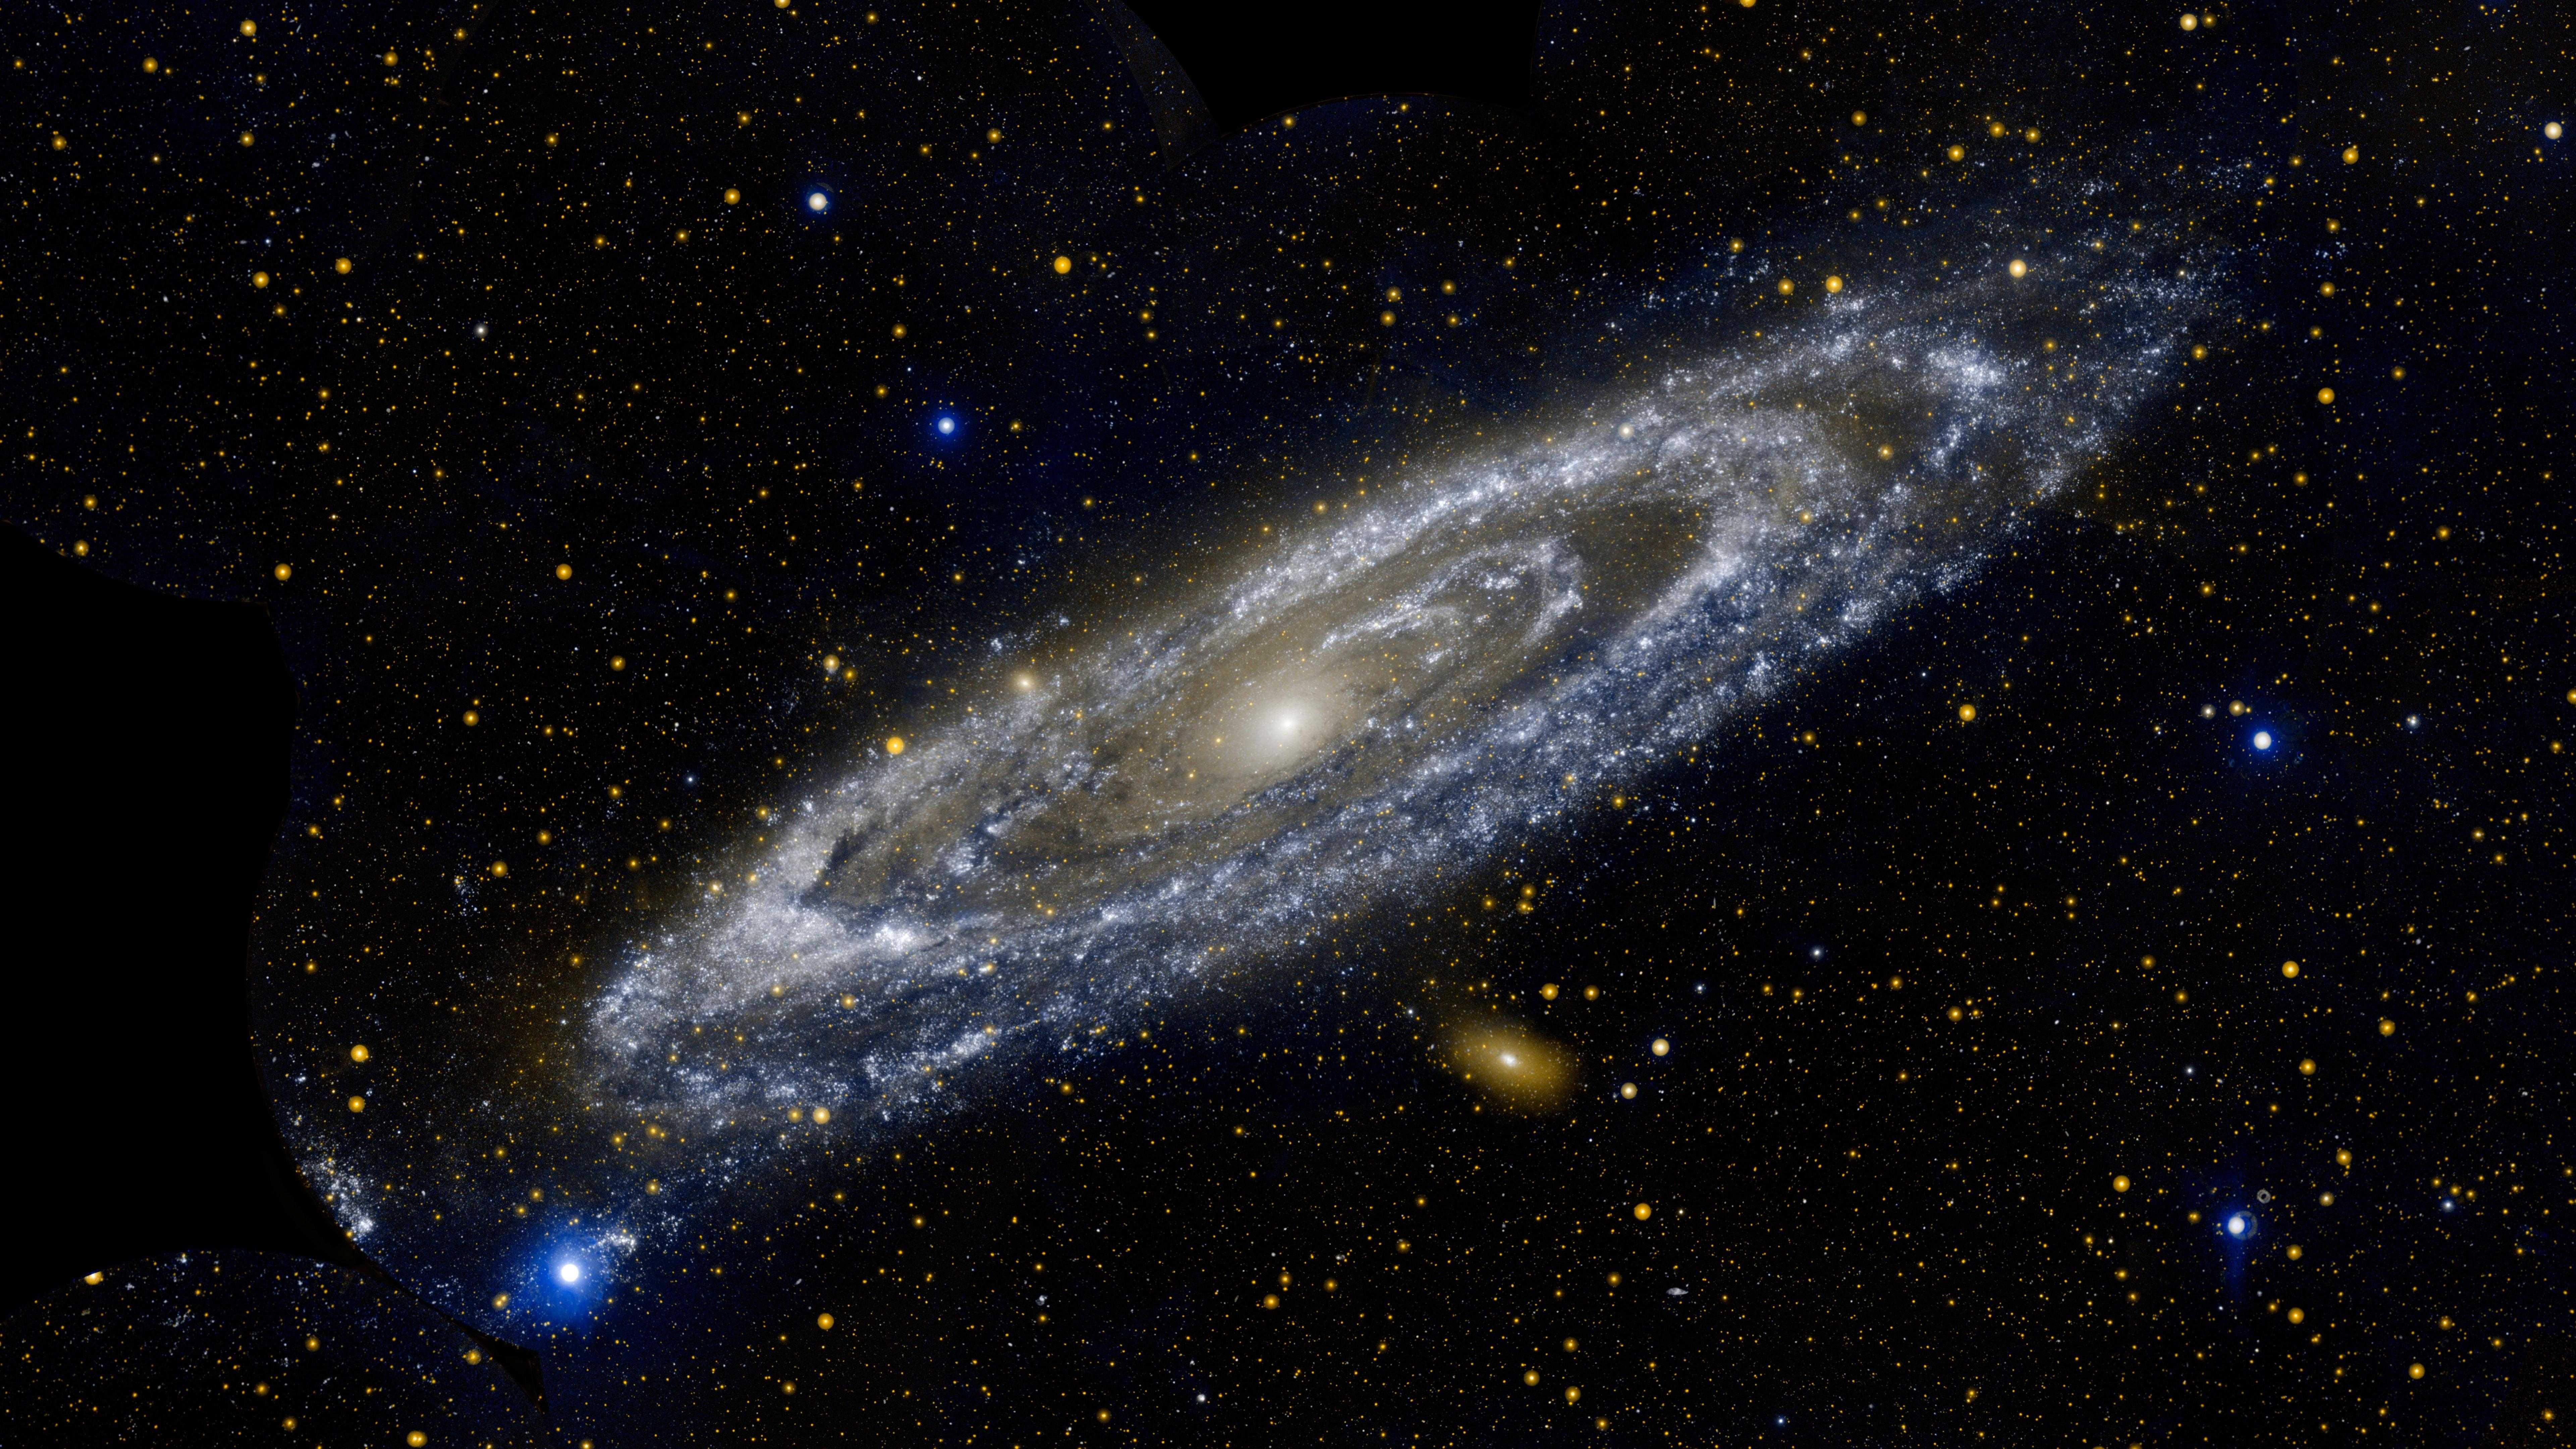 Слепая зона: что за громадный объект обнаружился «за спиной» нашей Галактики?